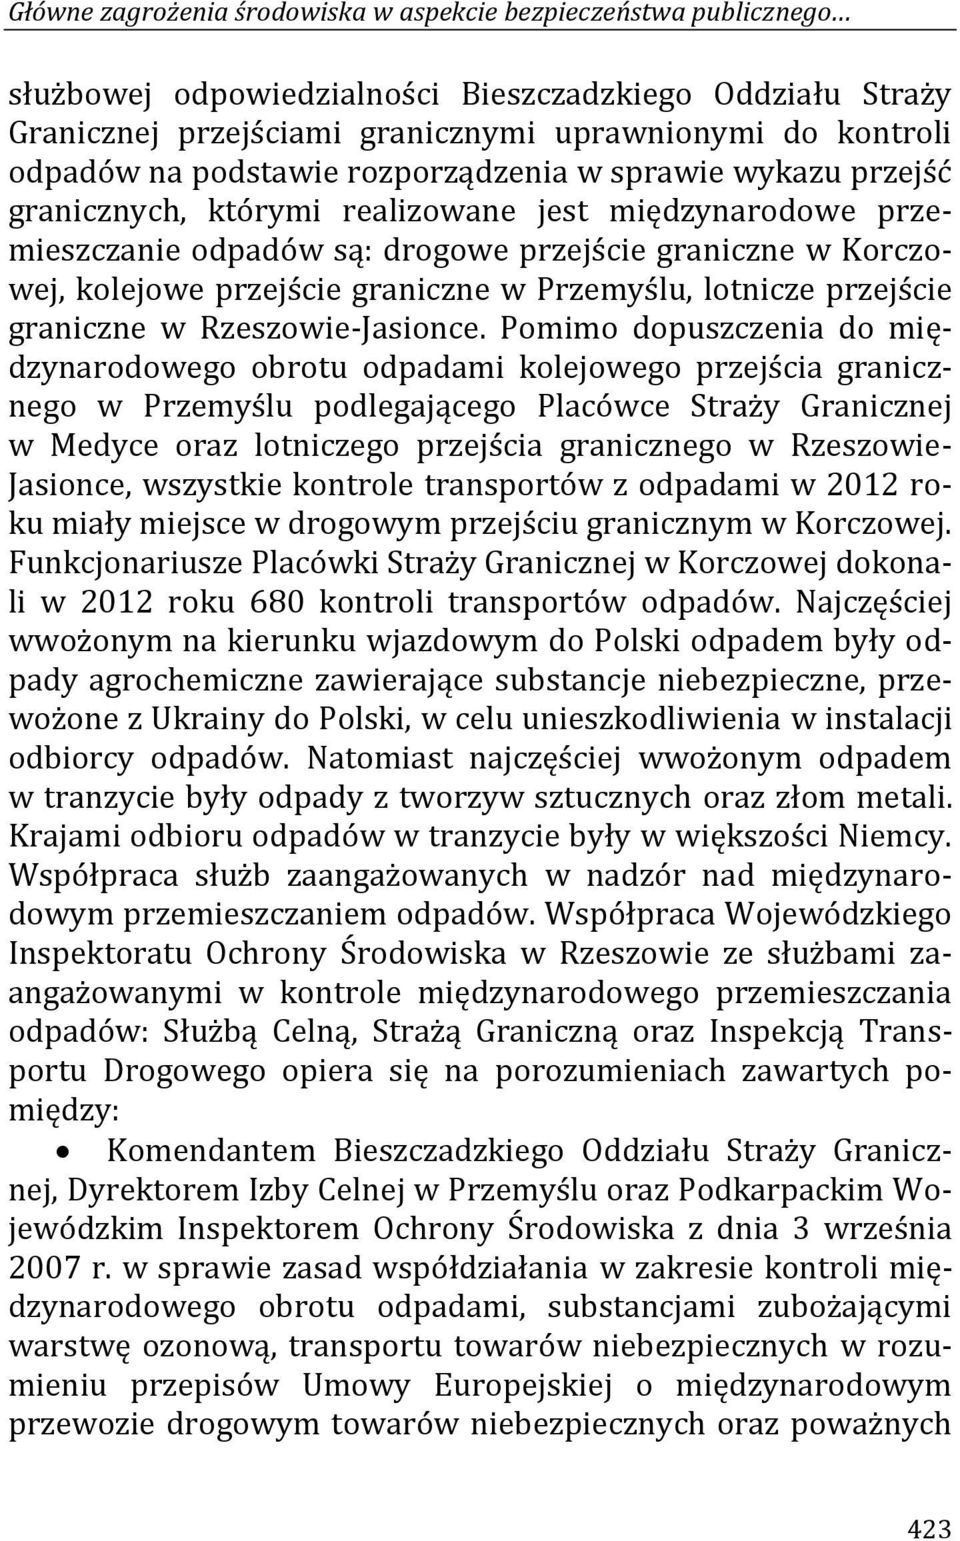 graniczne w Przemyślu, lotnicze przejście graniczne w Rzeszowie-Jasionce.